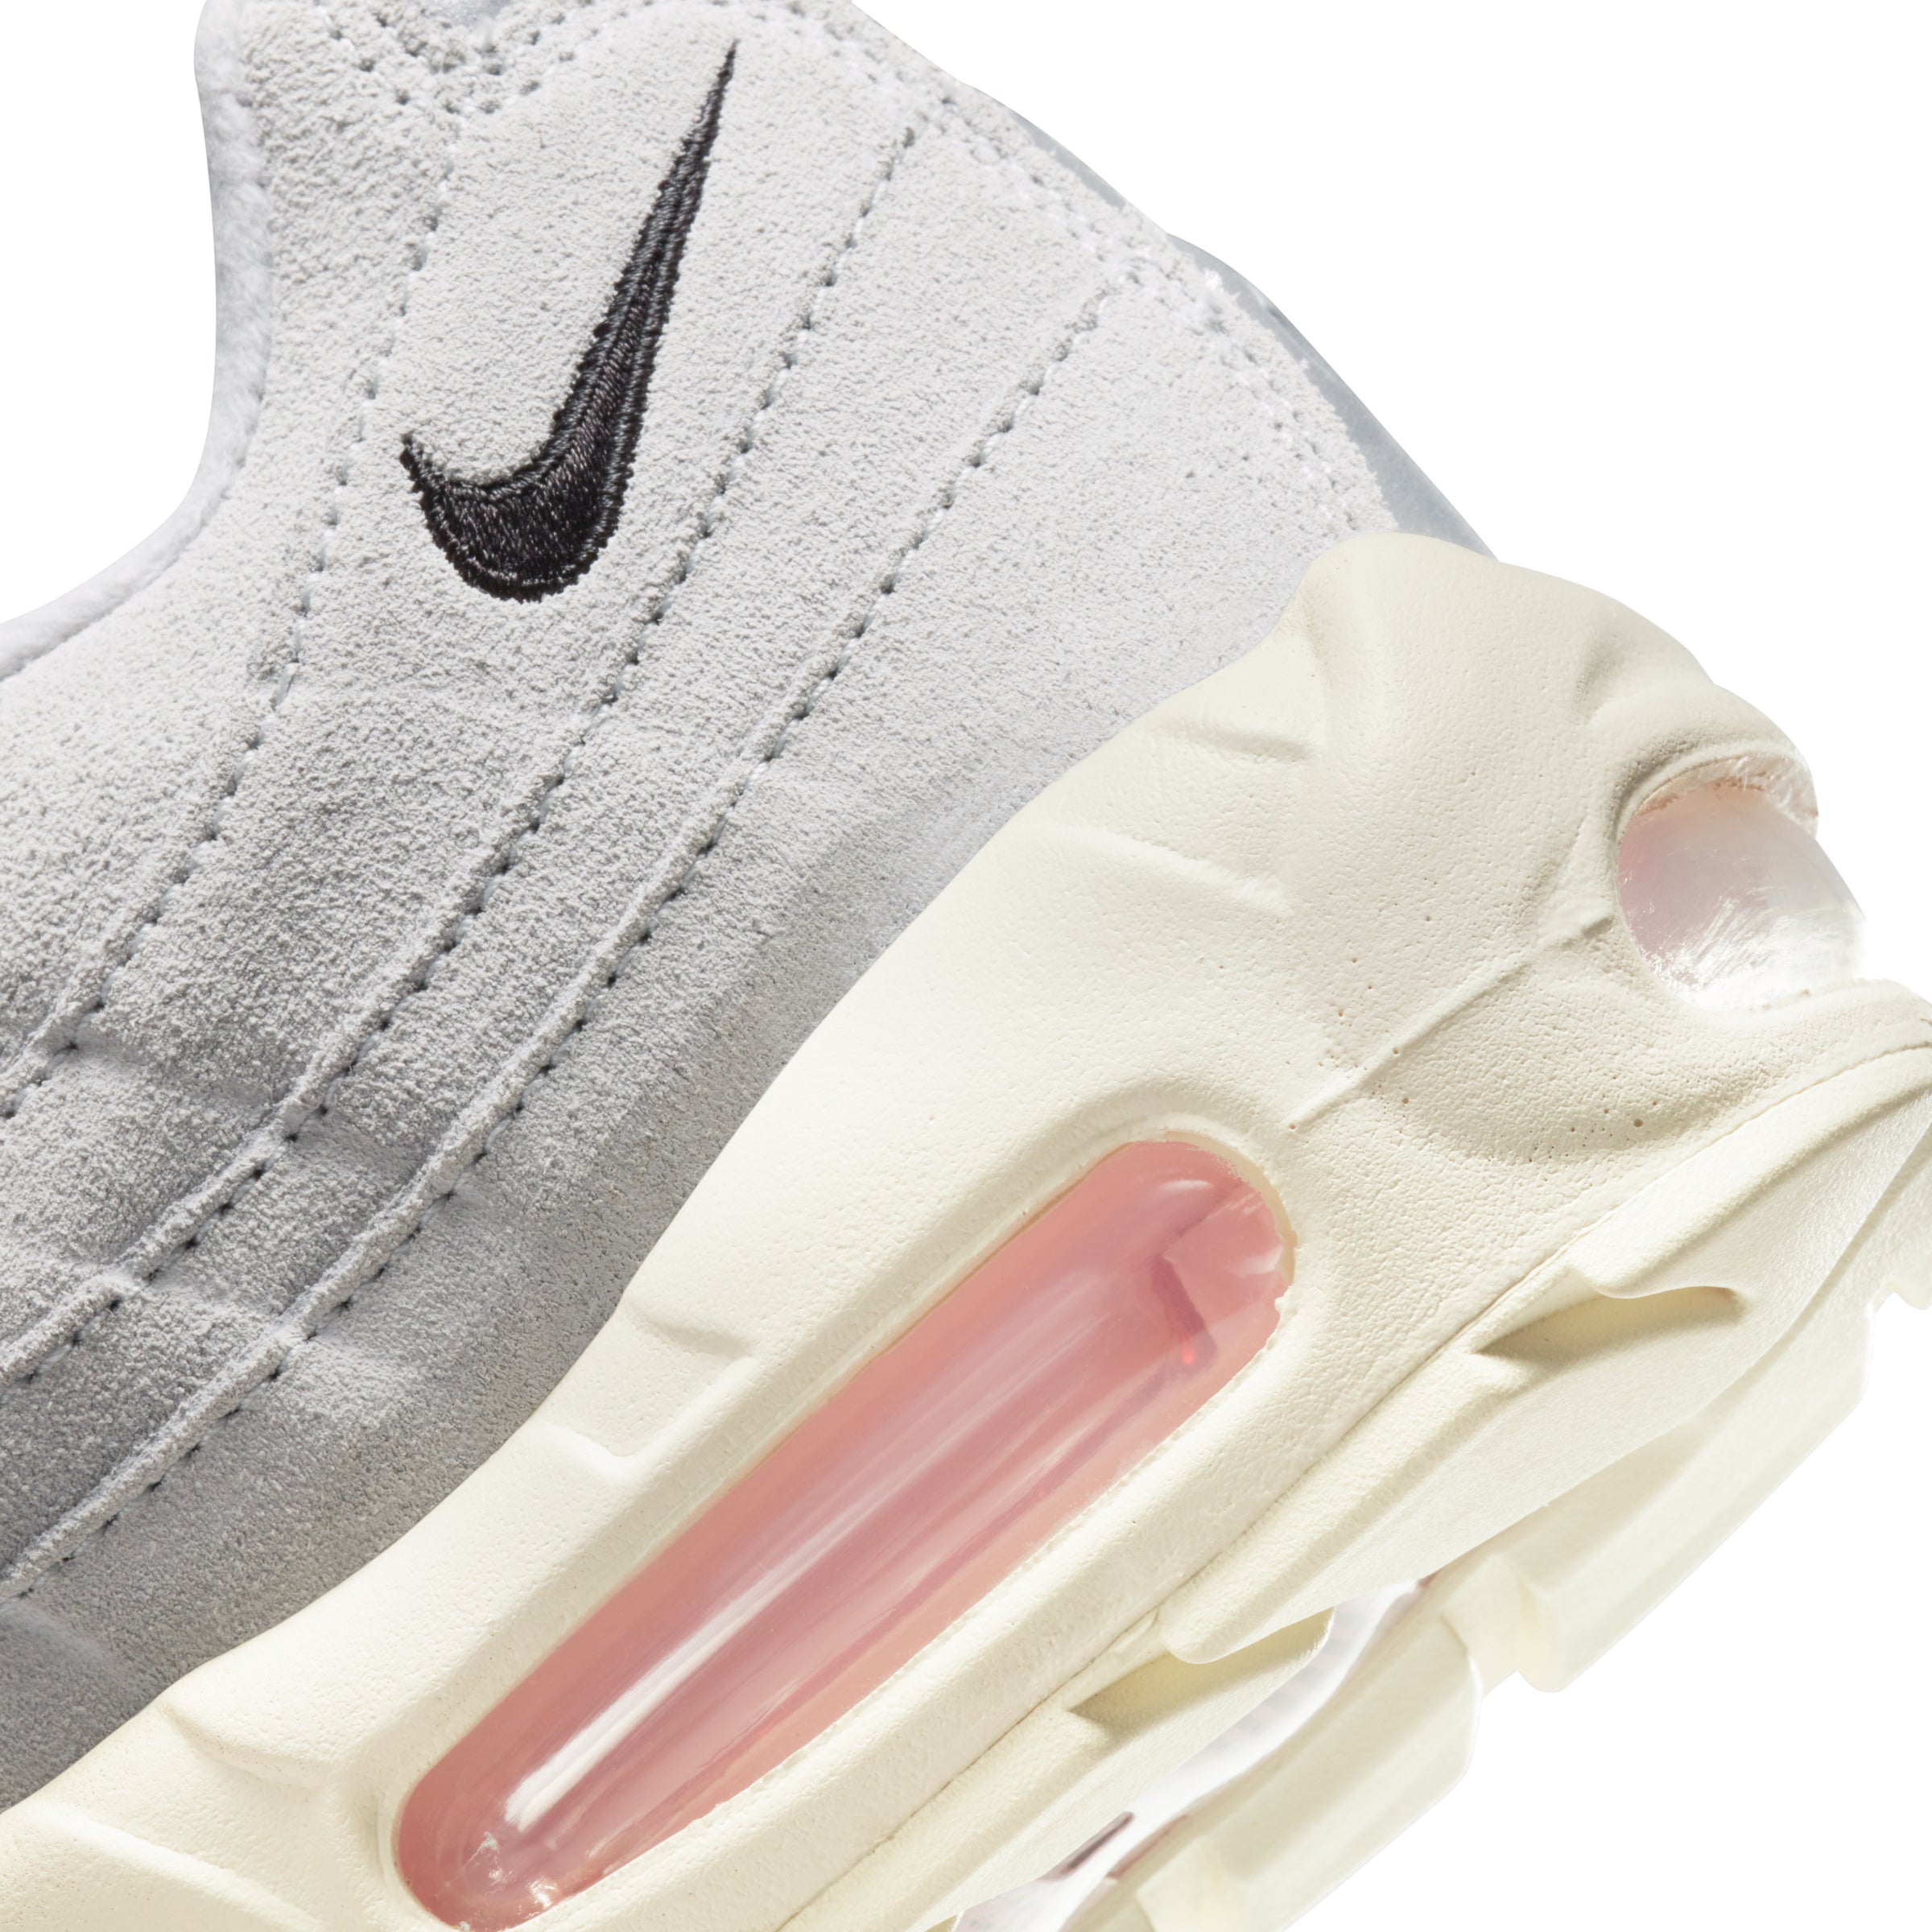 Nike Air Max 95 Grey Fog Pink Foam | DX2670-001 – BNIB